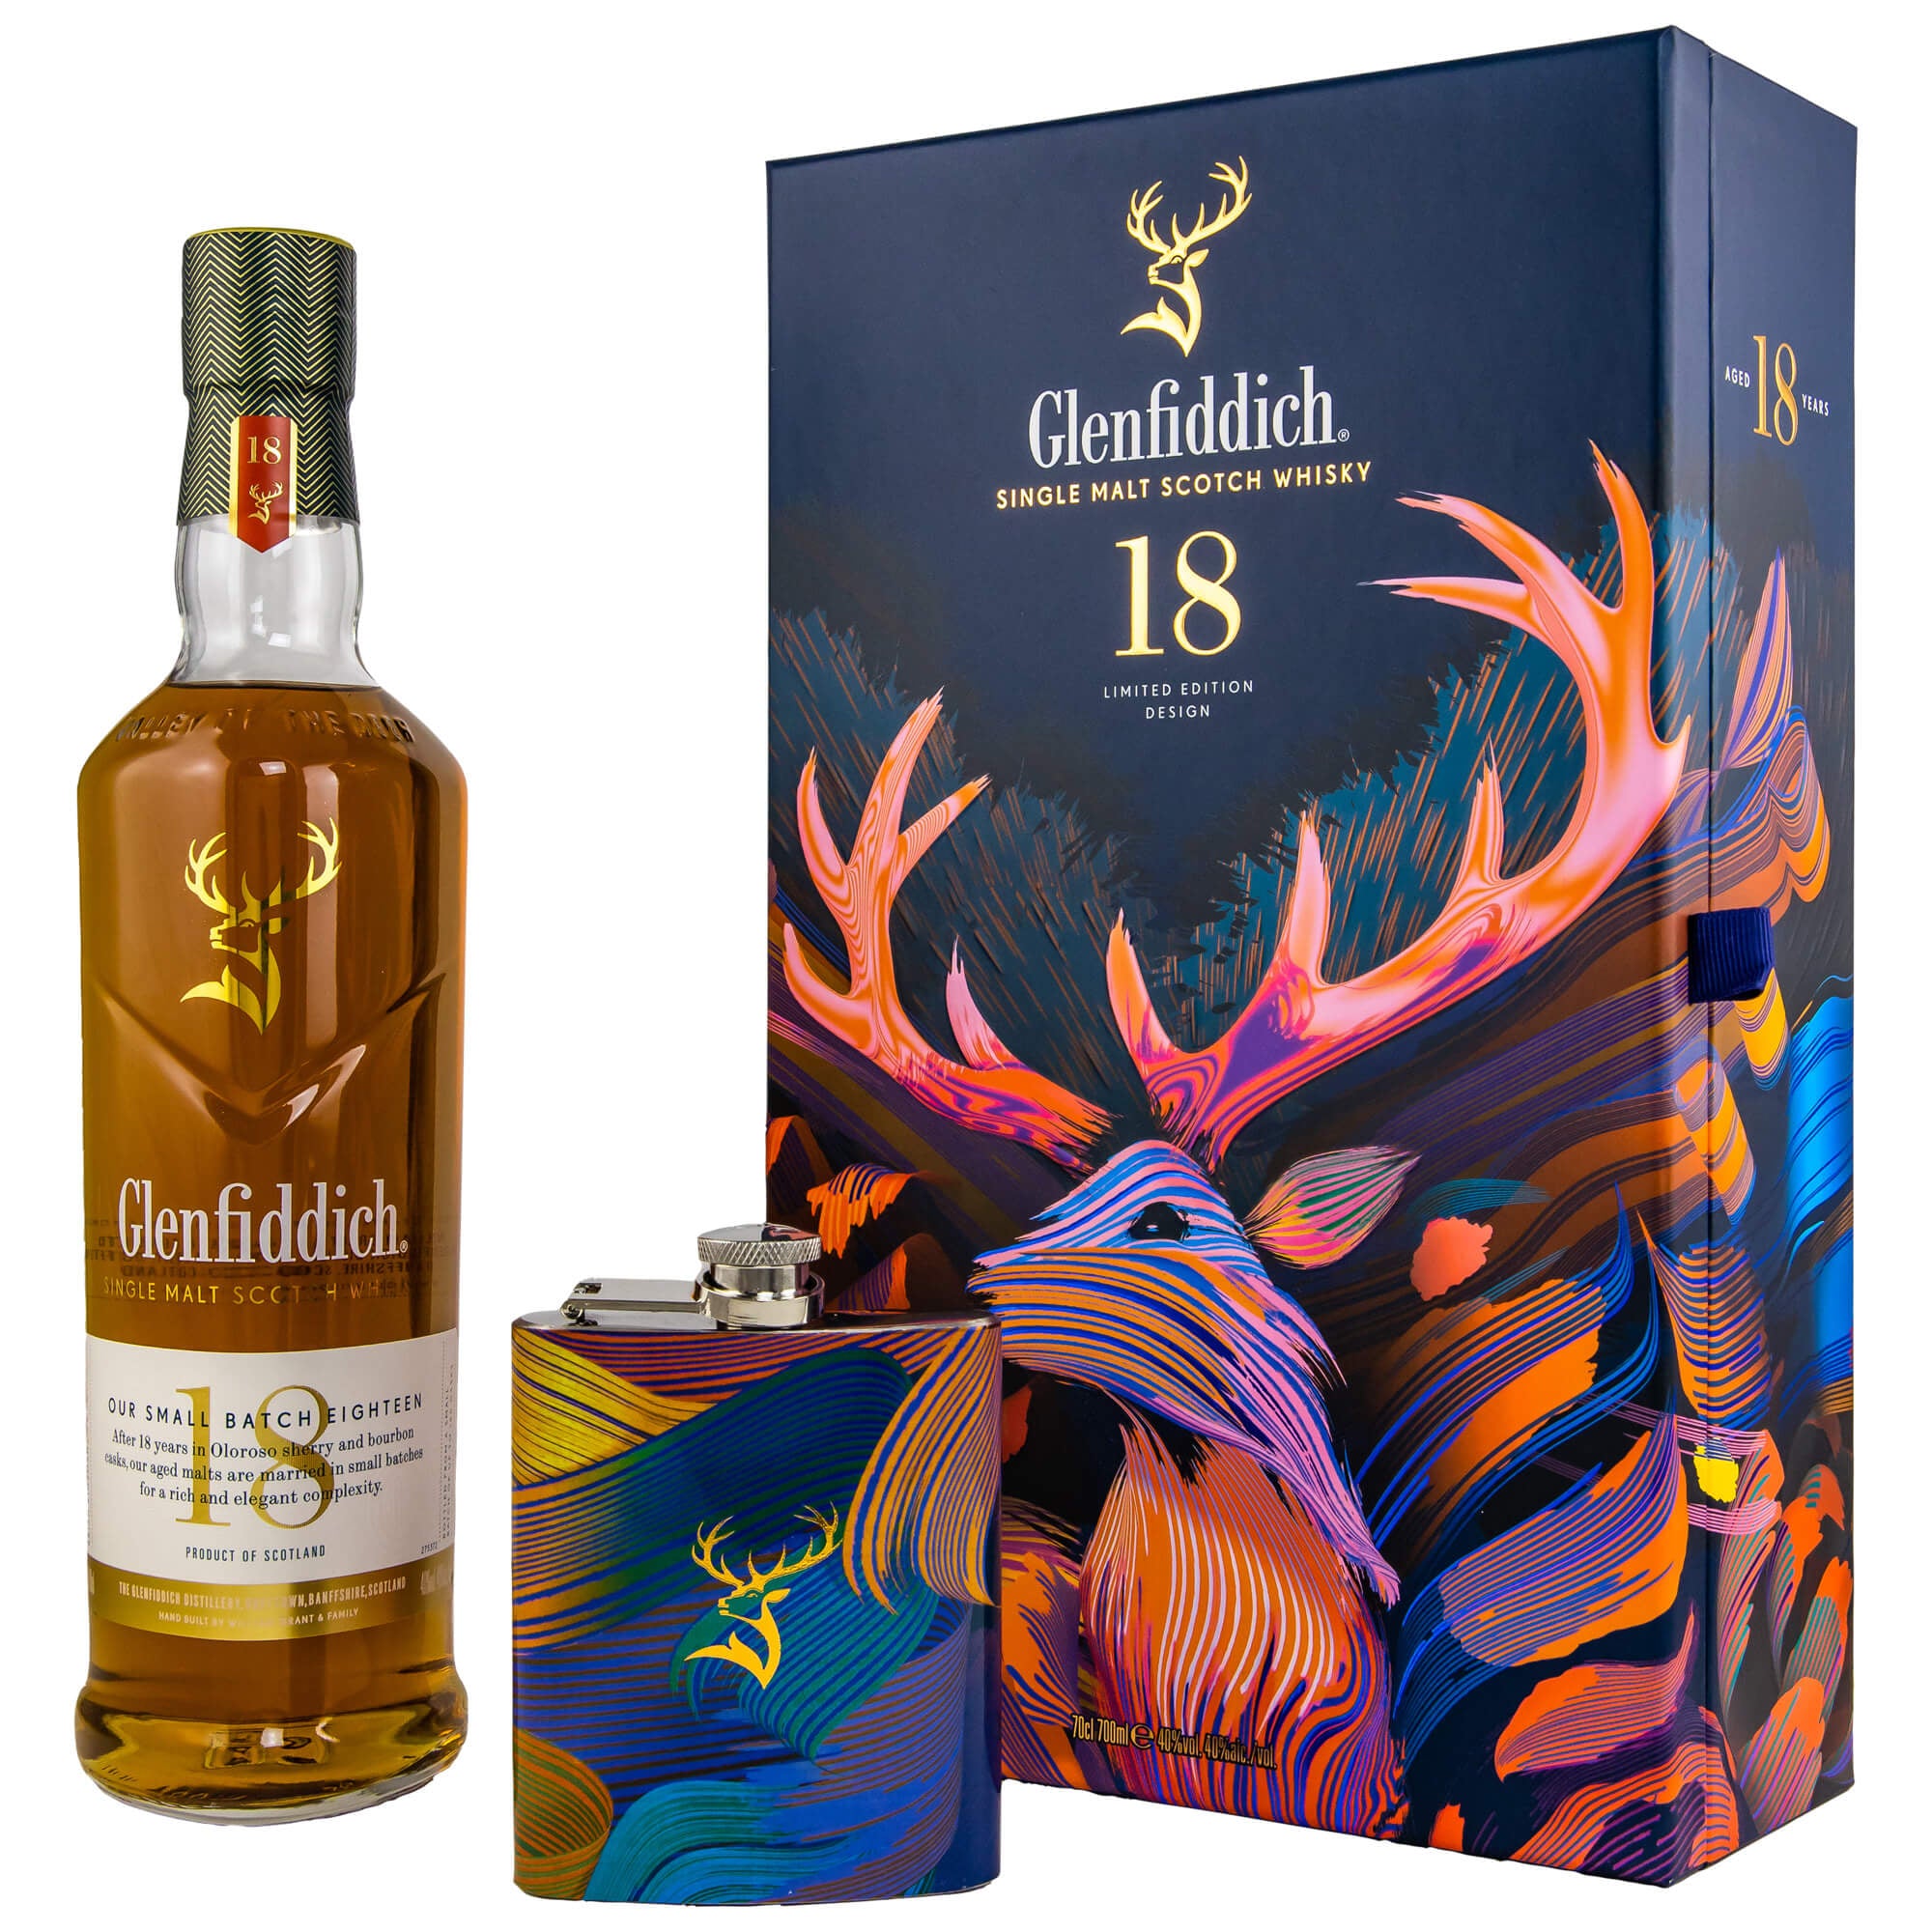 Glenfiddich 18 Jahre Limited Design Edition